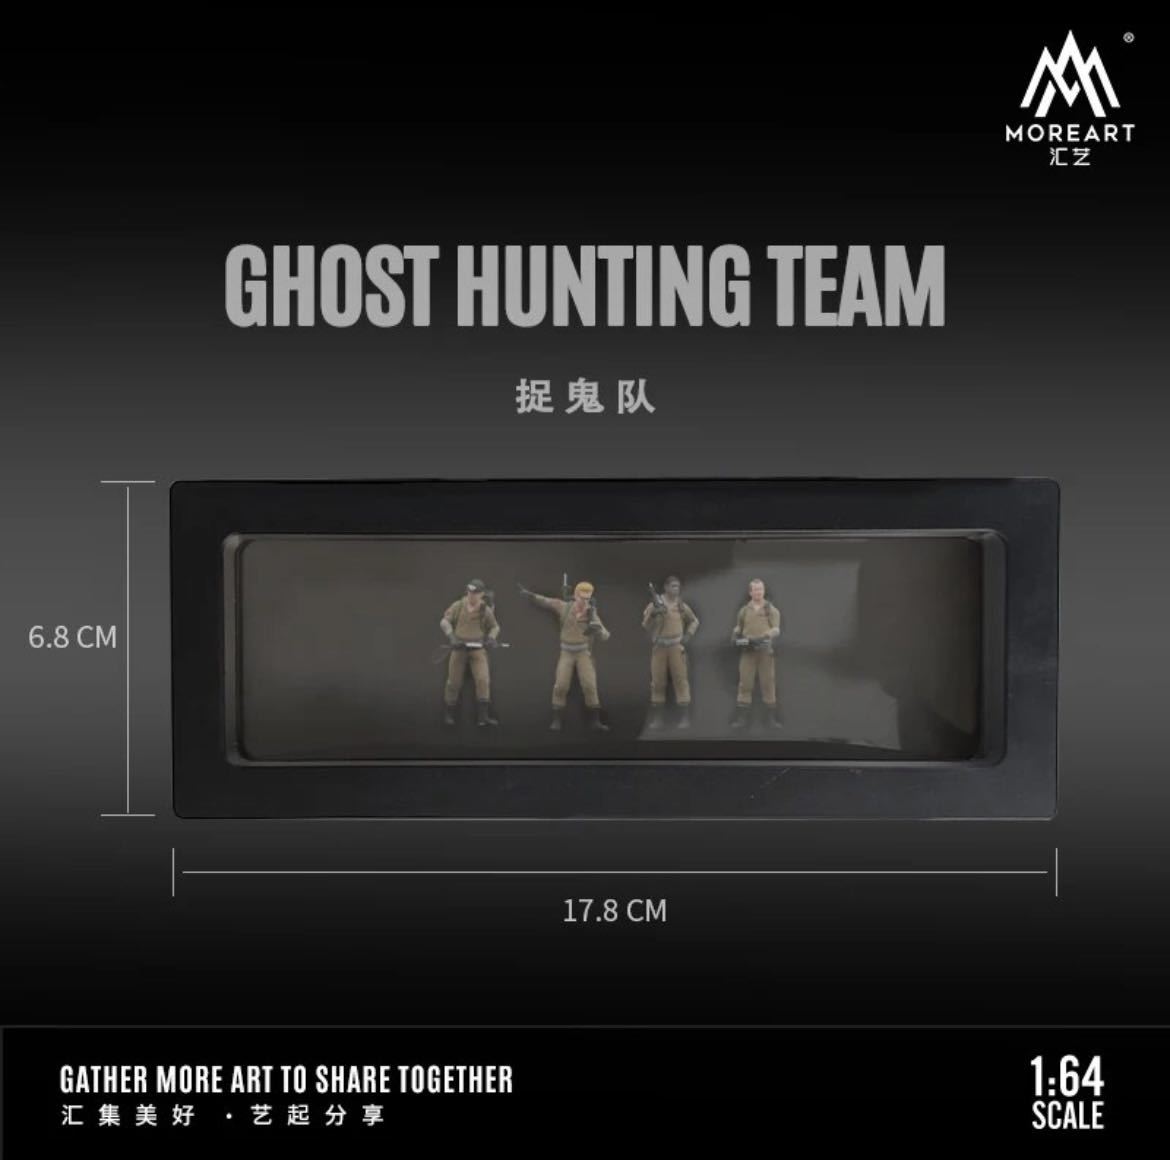 1/64スケール Ghost huntチームモデルセット、シミュレーションキャラクターモデルの画像4